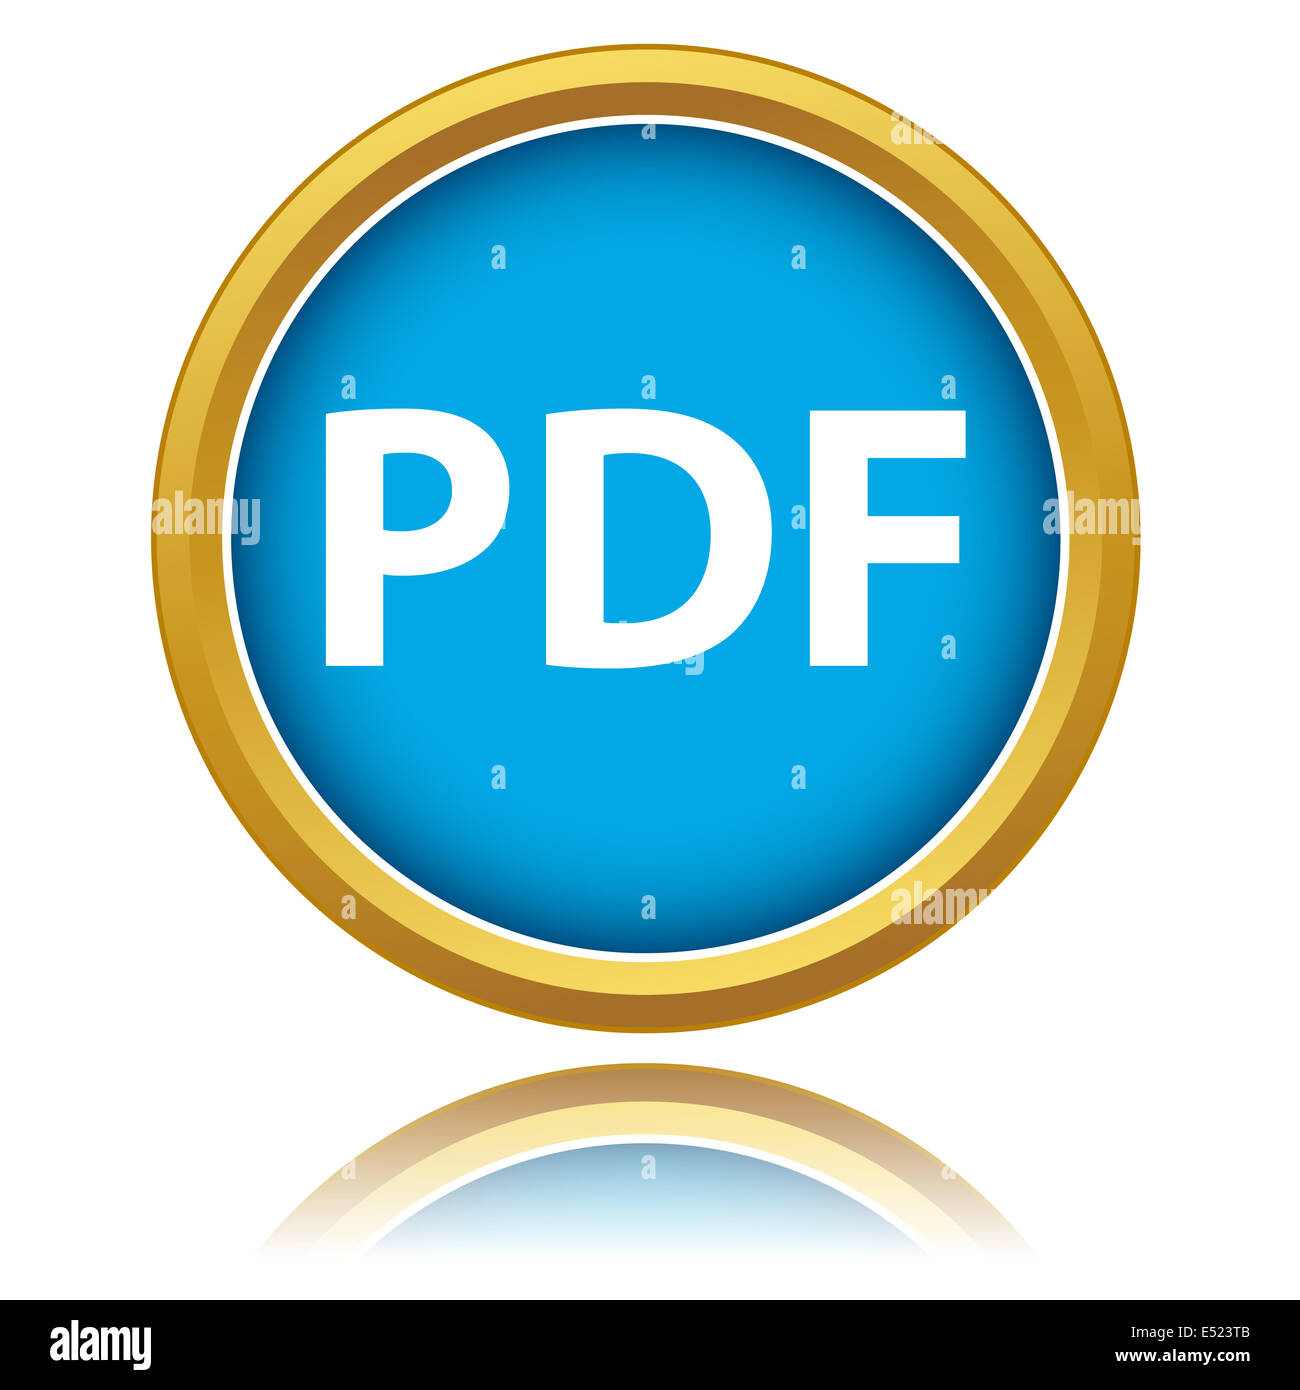 Pdf download icon Stock Photo